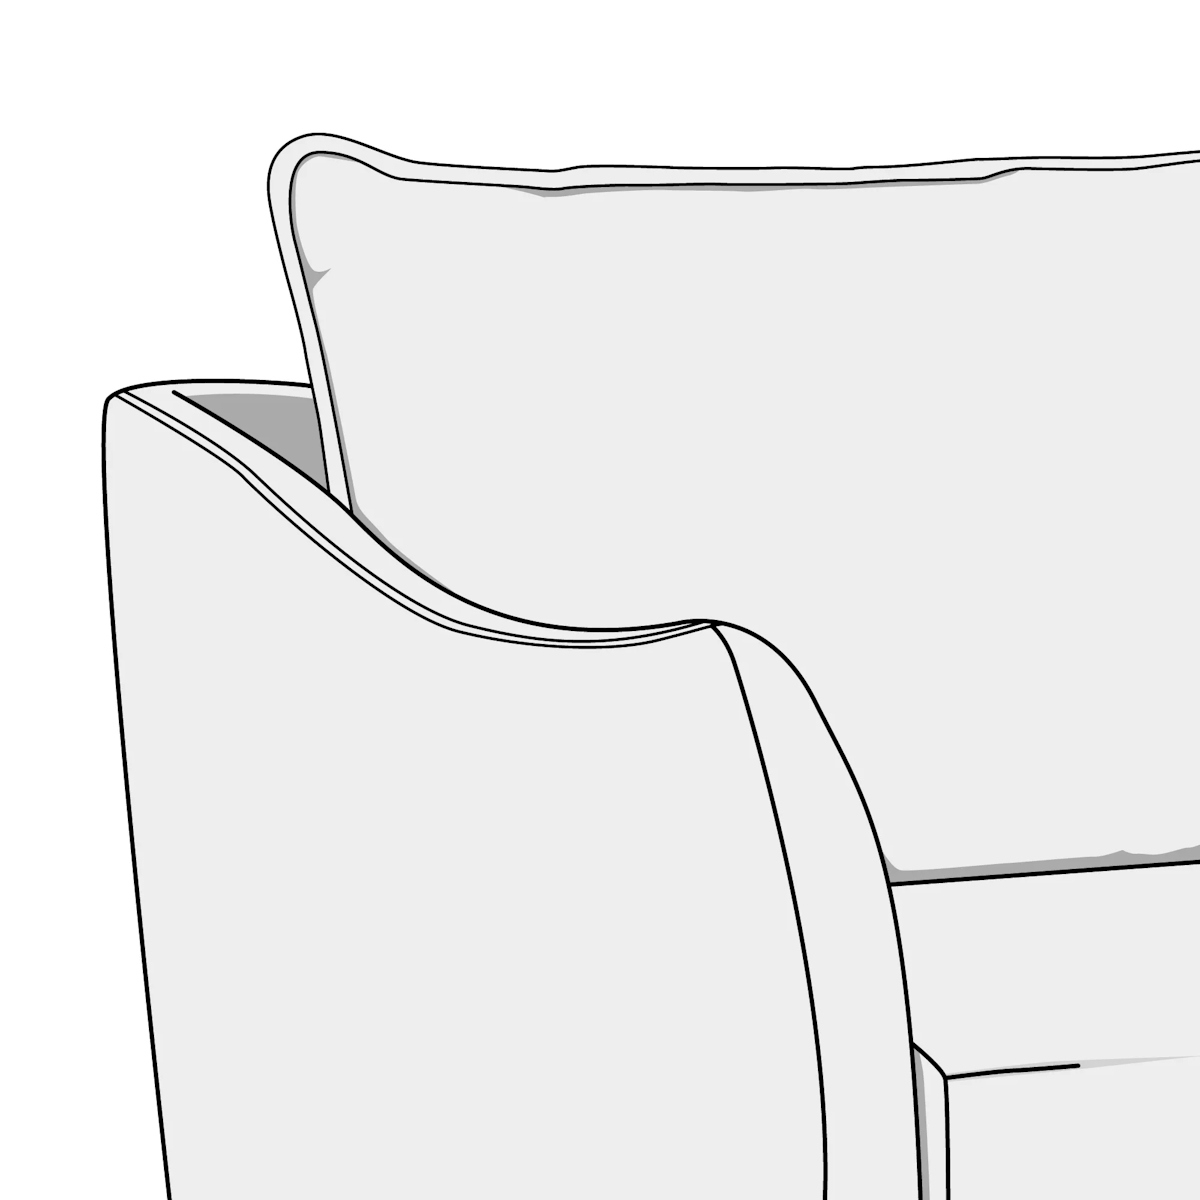 Illustration of knife-edge sofa cushion style